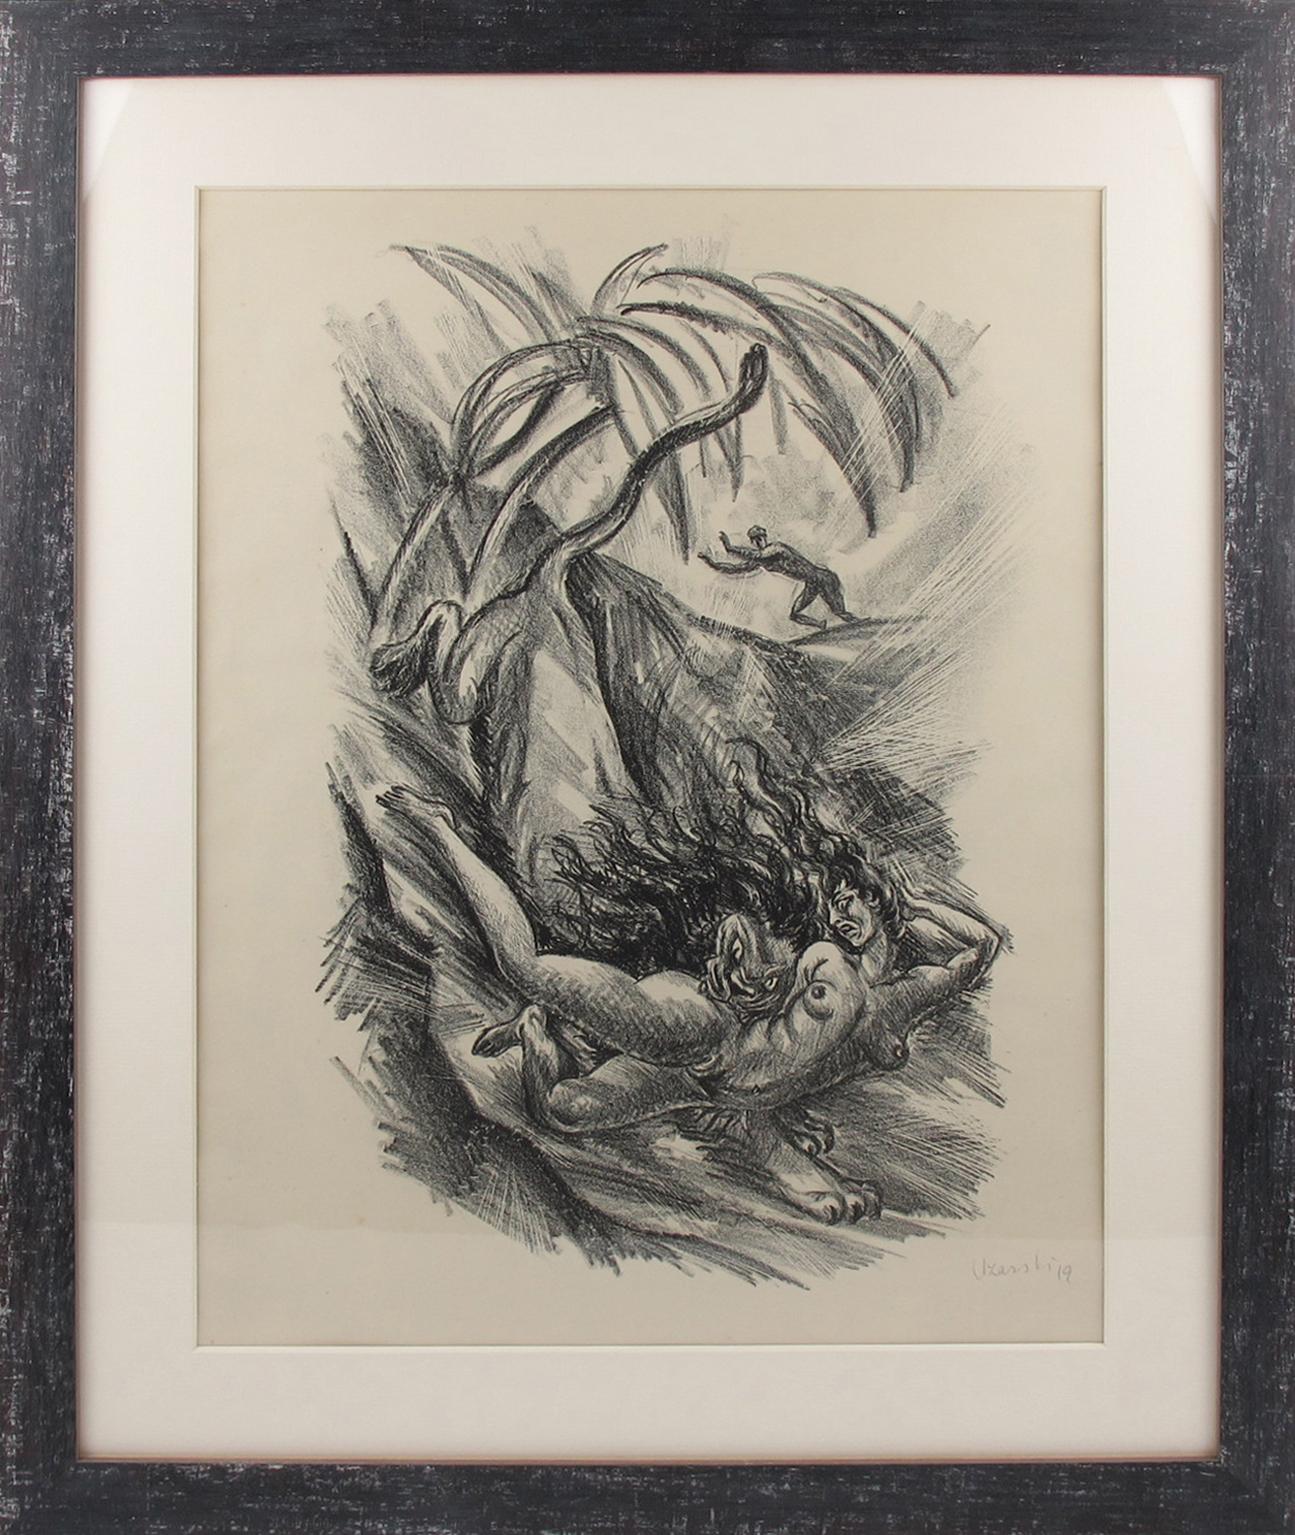 Diese atemberaubende Kohlezeichnung auf Papier, die einen phantasievollen Löwen darstellt, der eine junge Frau entführt, wurde von dem deutschen Künstler Adolf Uzarski (1885-1970) entworfen. Diese Zeichnung ist eine von fünf Lithografien, die zur